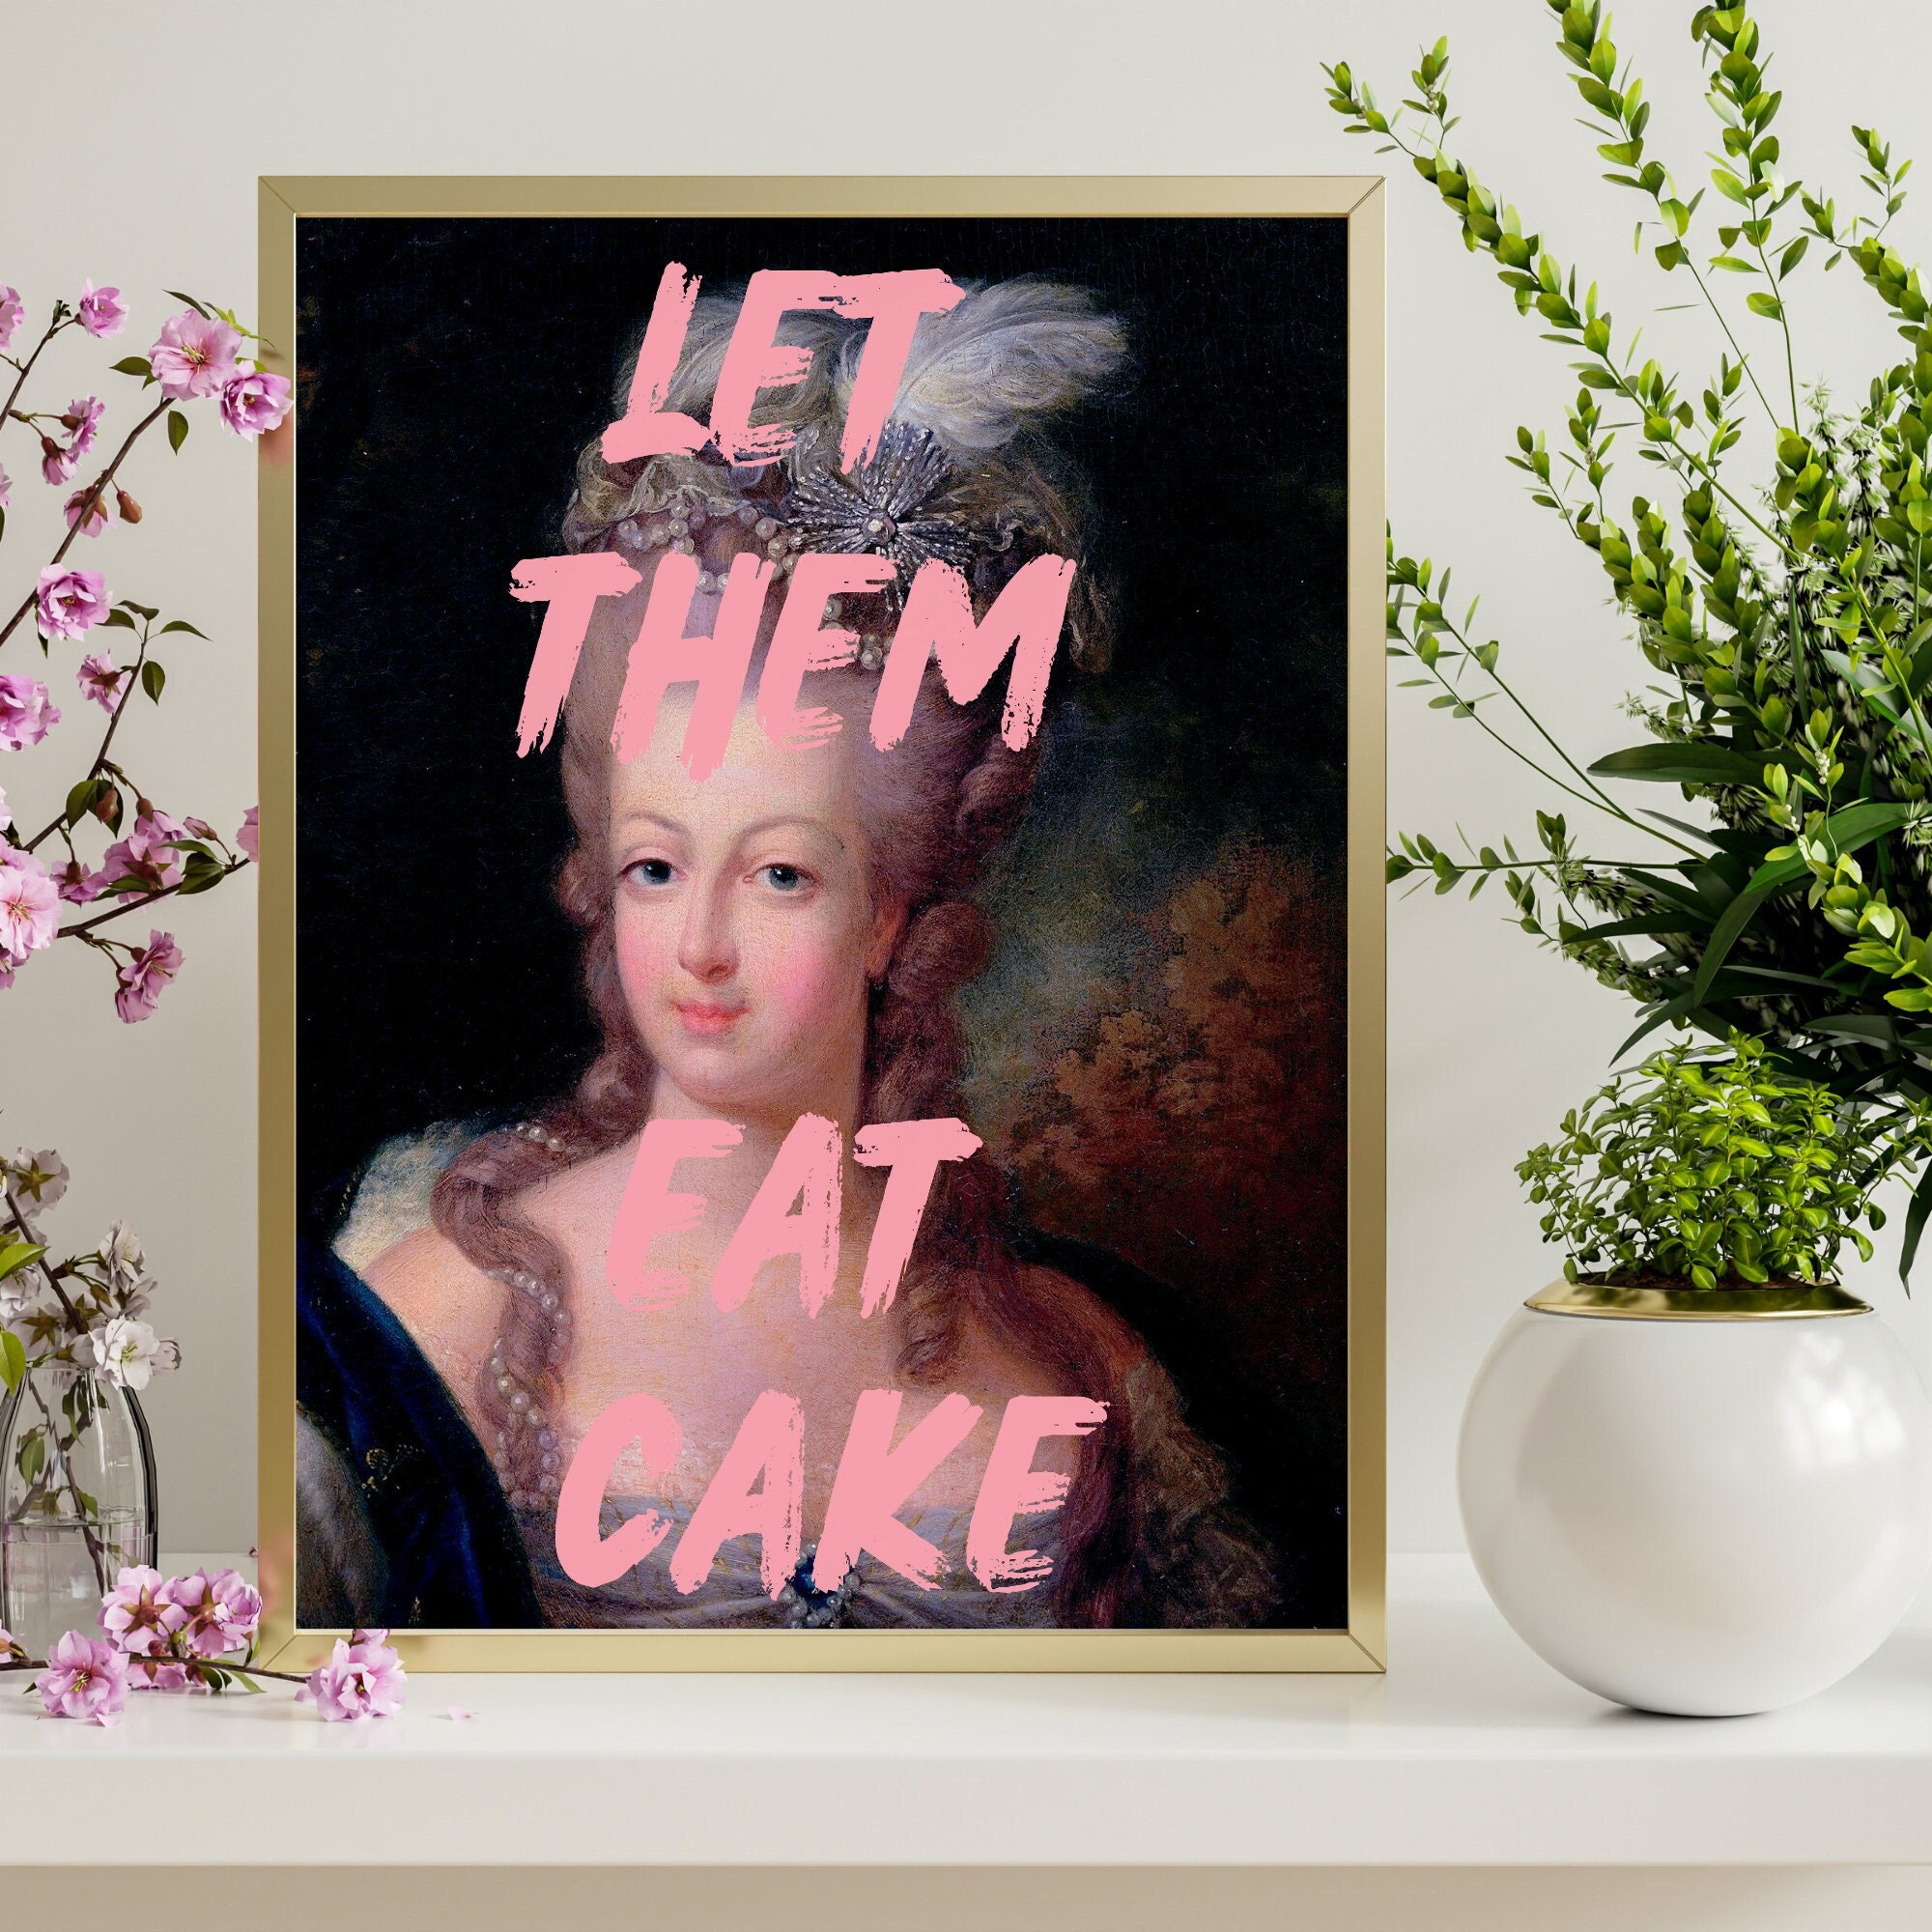 Marie Antoinette print, Marie Antoinette art, Marie Antoinette decor, Eat  Cake print, Neon print, French painting, Wall decor, Gift for her